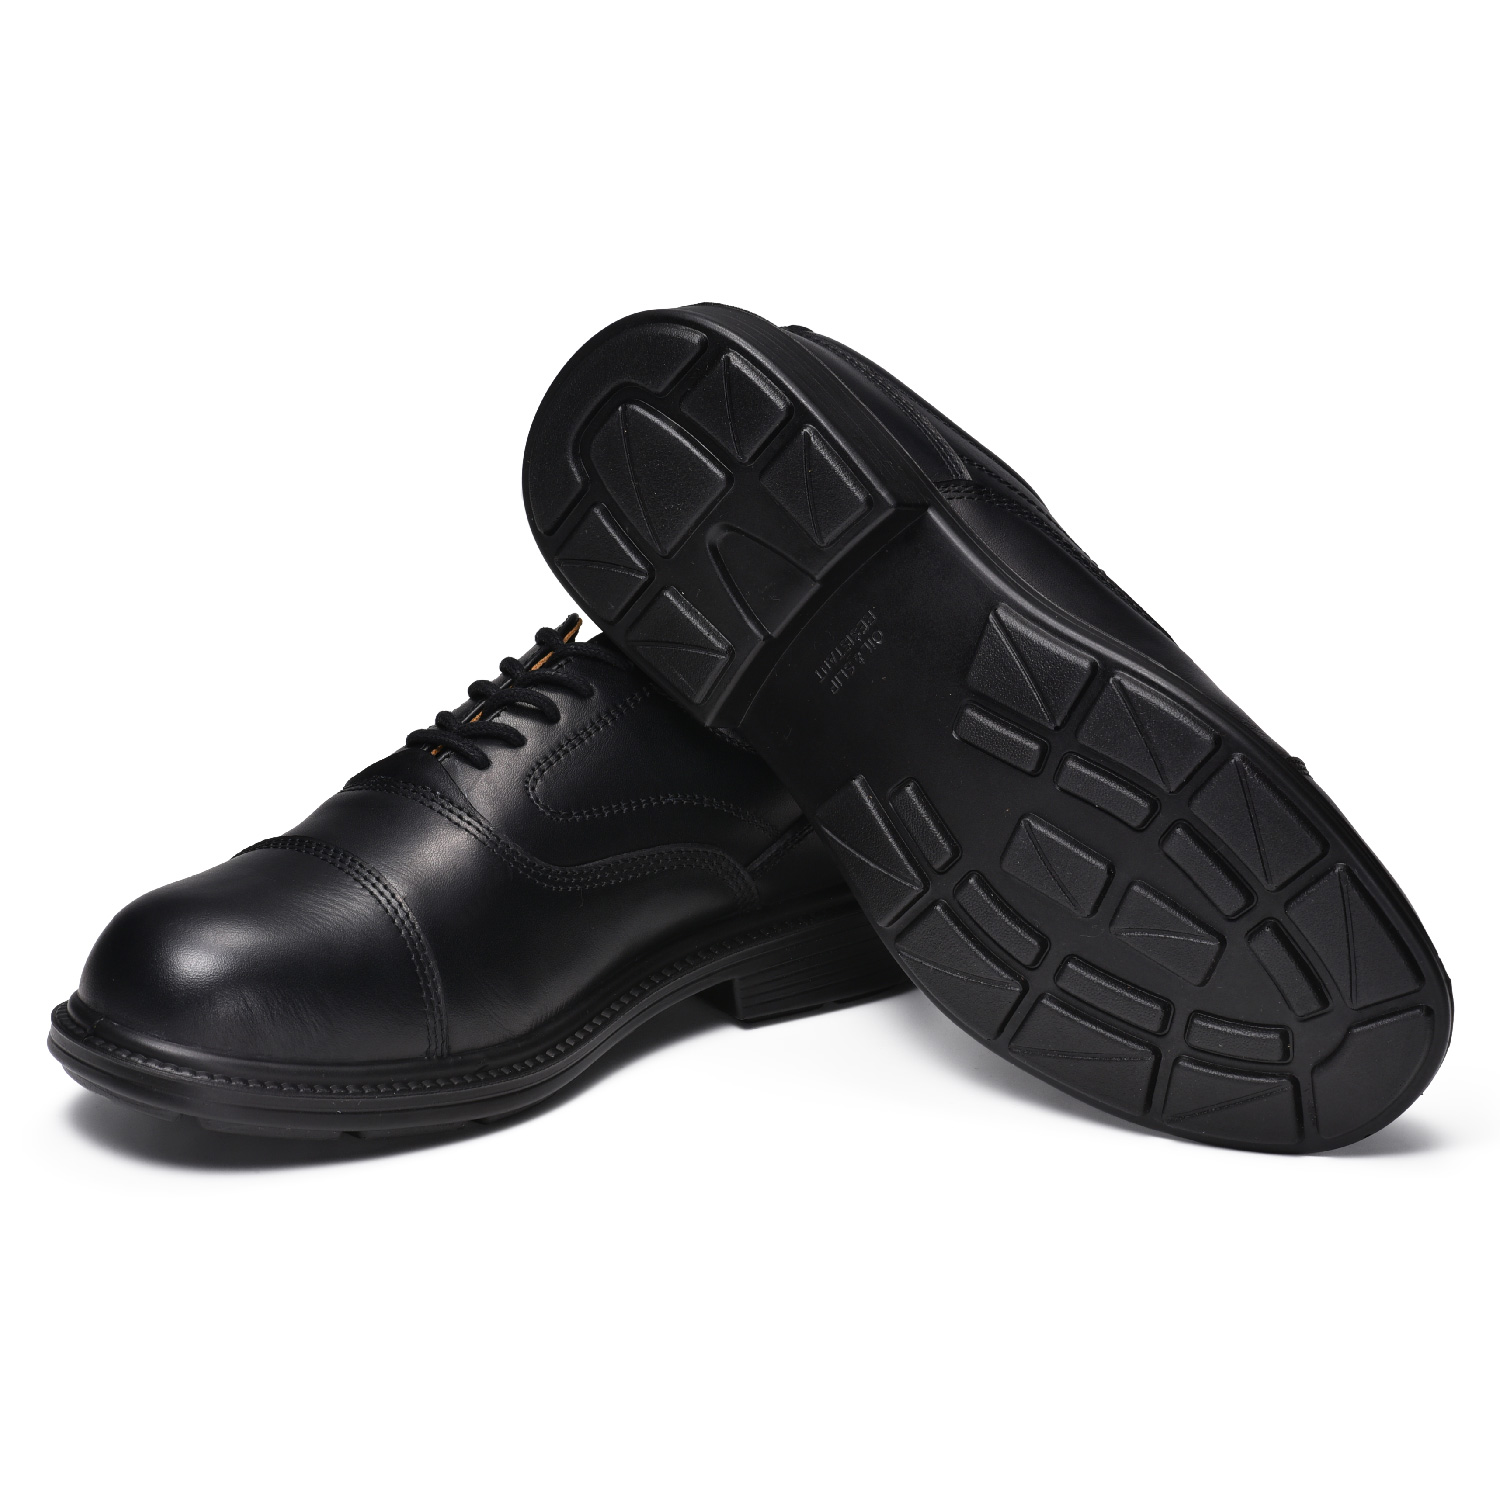 S3 Zapatos de Seguridad de Cuero para Ejecutivo y Gerente con Puntera de Acero L-7527